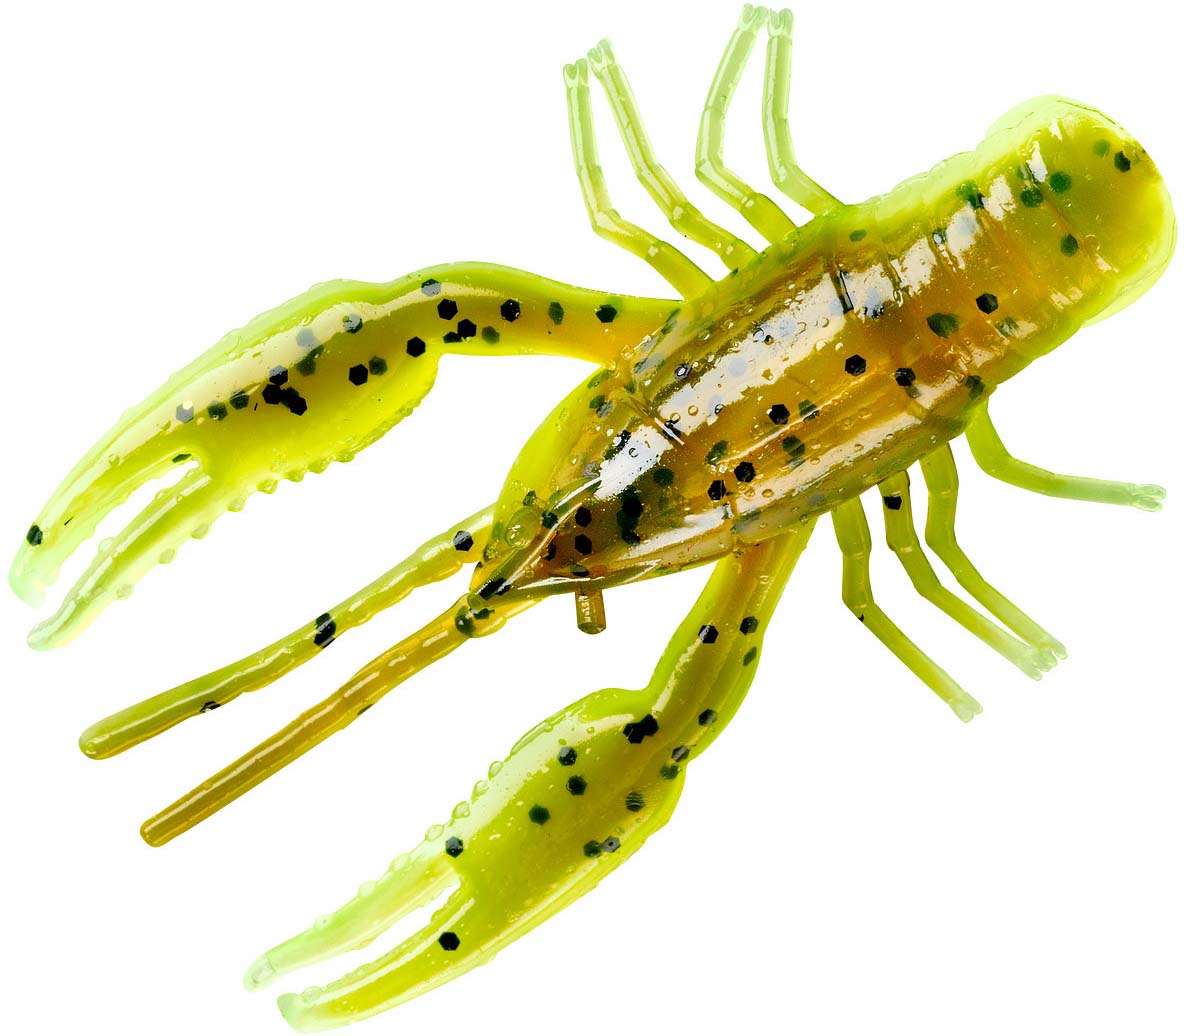 WorldCare® FTK 8Pcs/lot 6cm/1.5g Floating Crawfish Fishing Craw